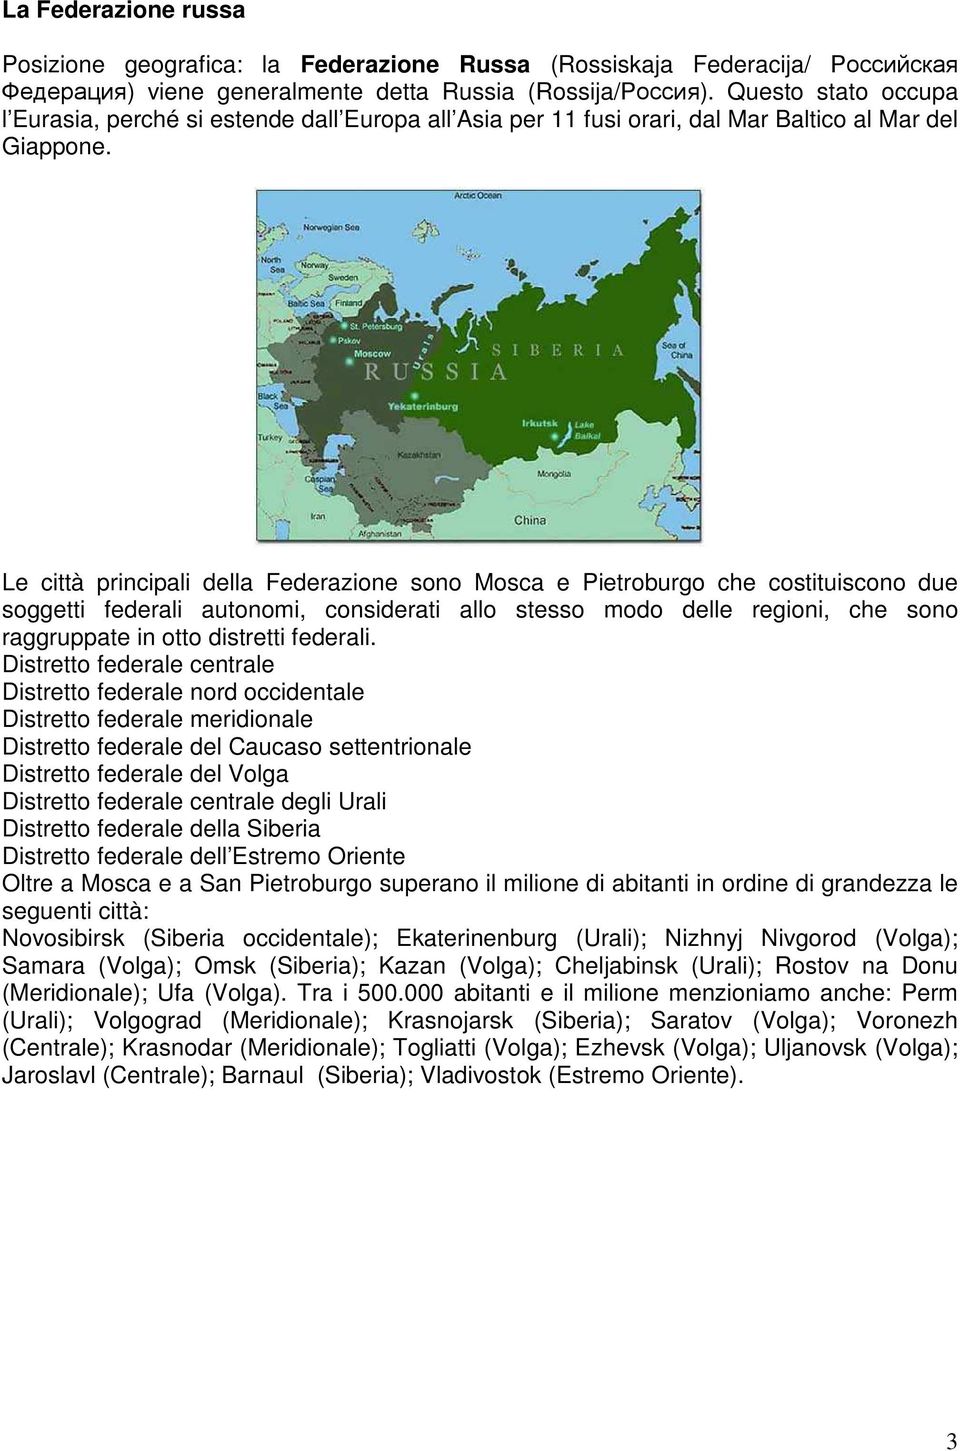 Le città principali della Federazione sono Mosca e Pietroburgo che costituiscono due soggetti federali autonomi, considerati allo stesso modo delle regioni, che sono raggruppate in otto distretti